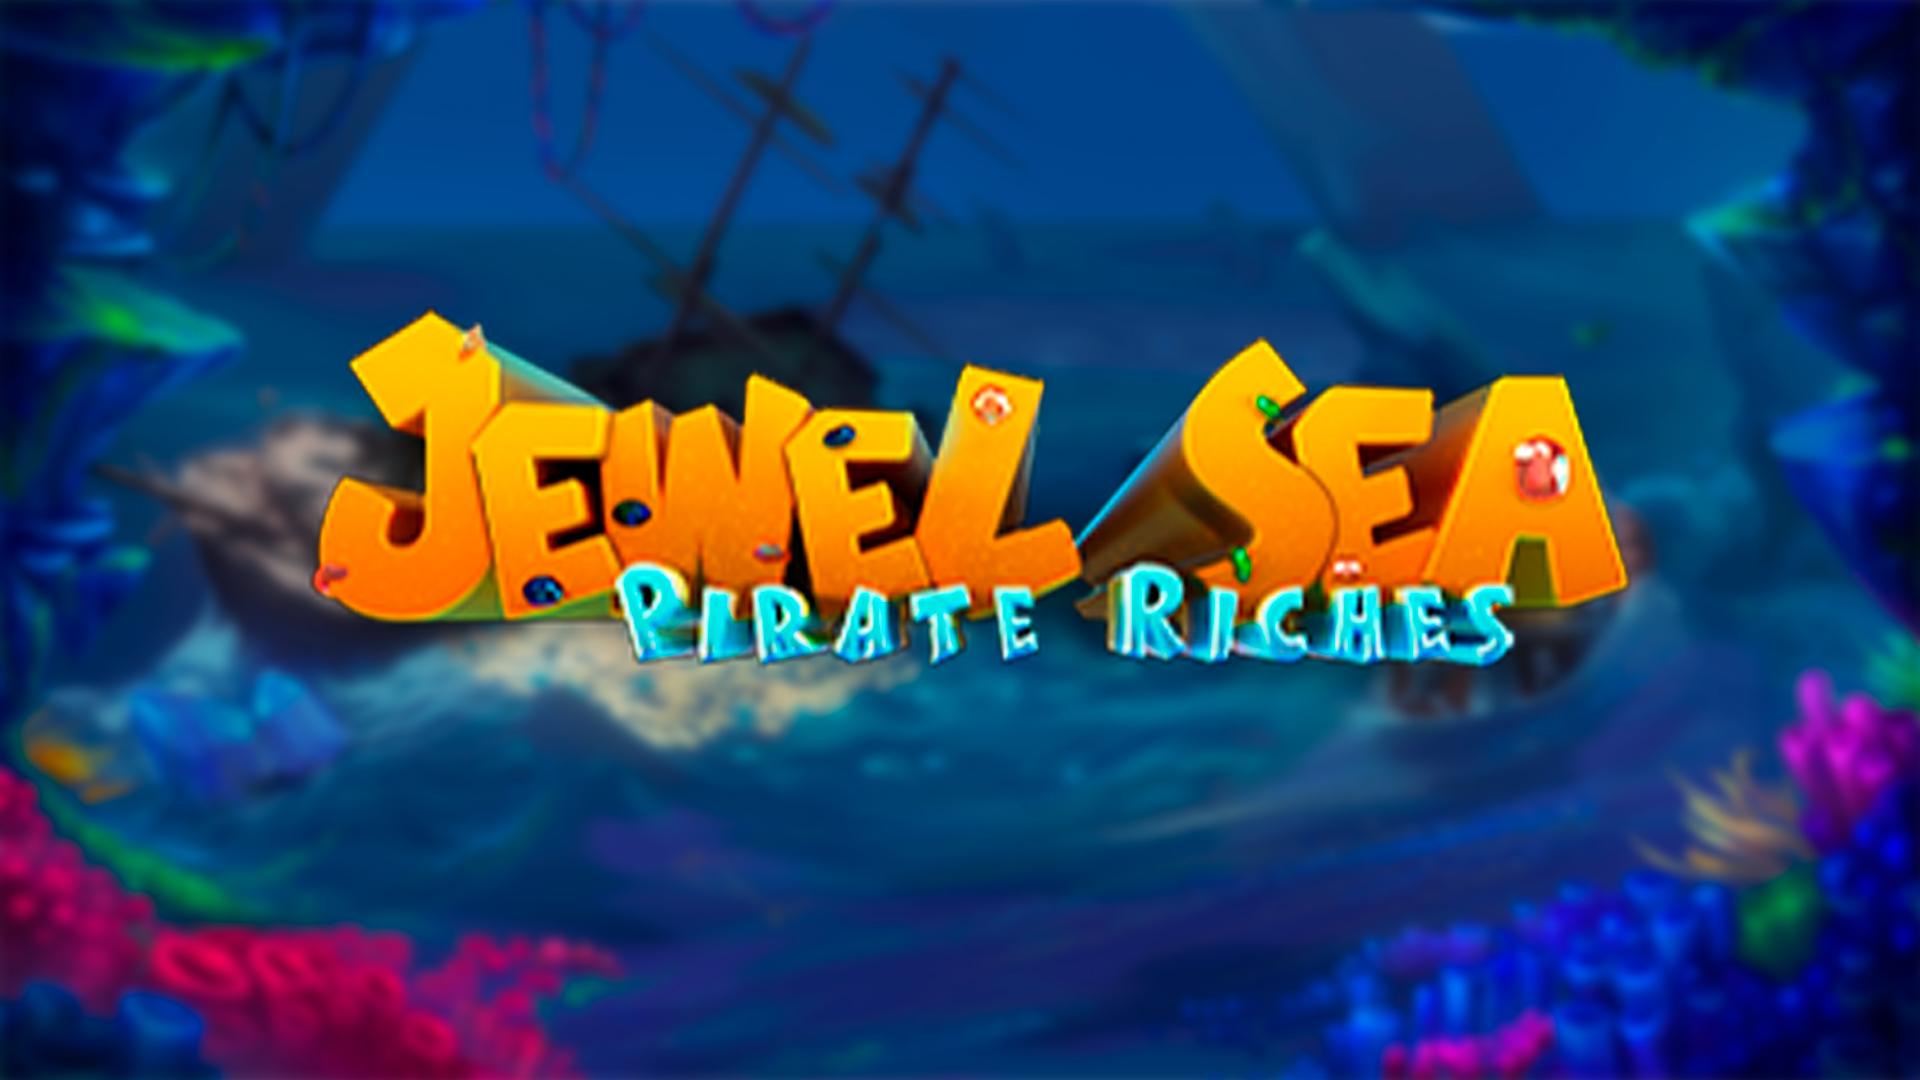 Fugaso Jewel Sea Pirate Riches